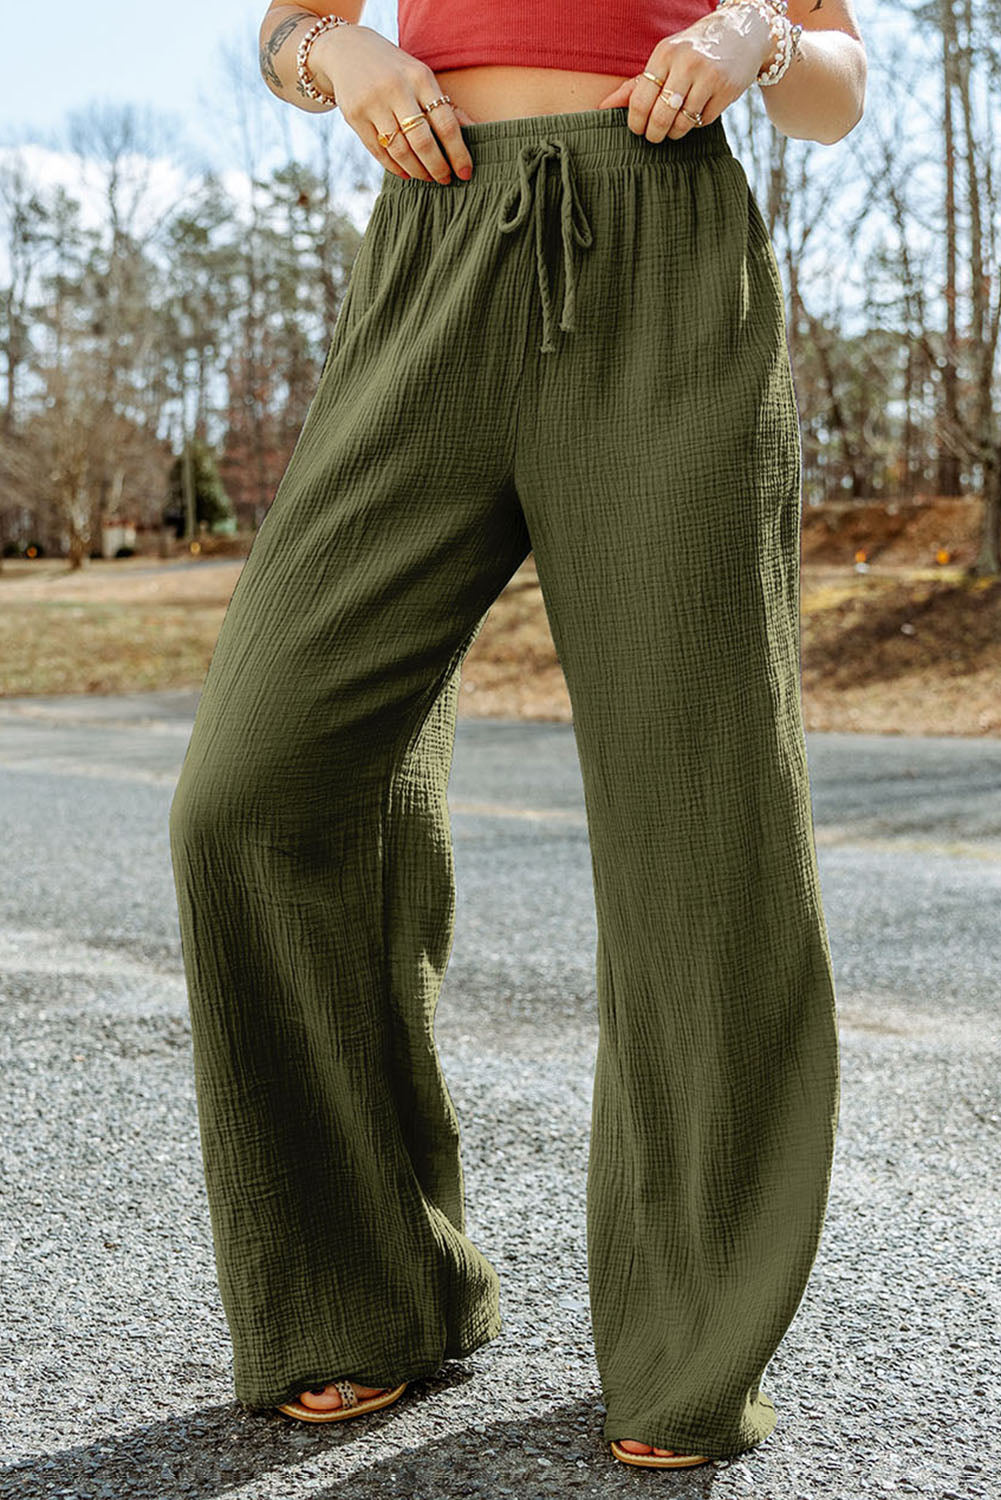 Zelene široke hlače z nagubano teksturo